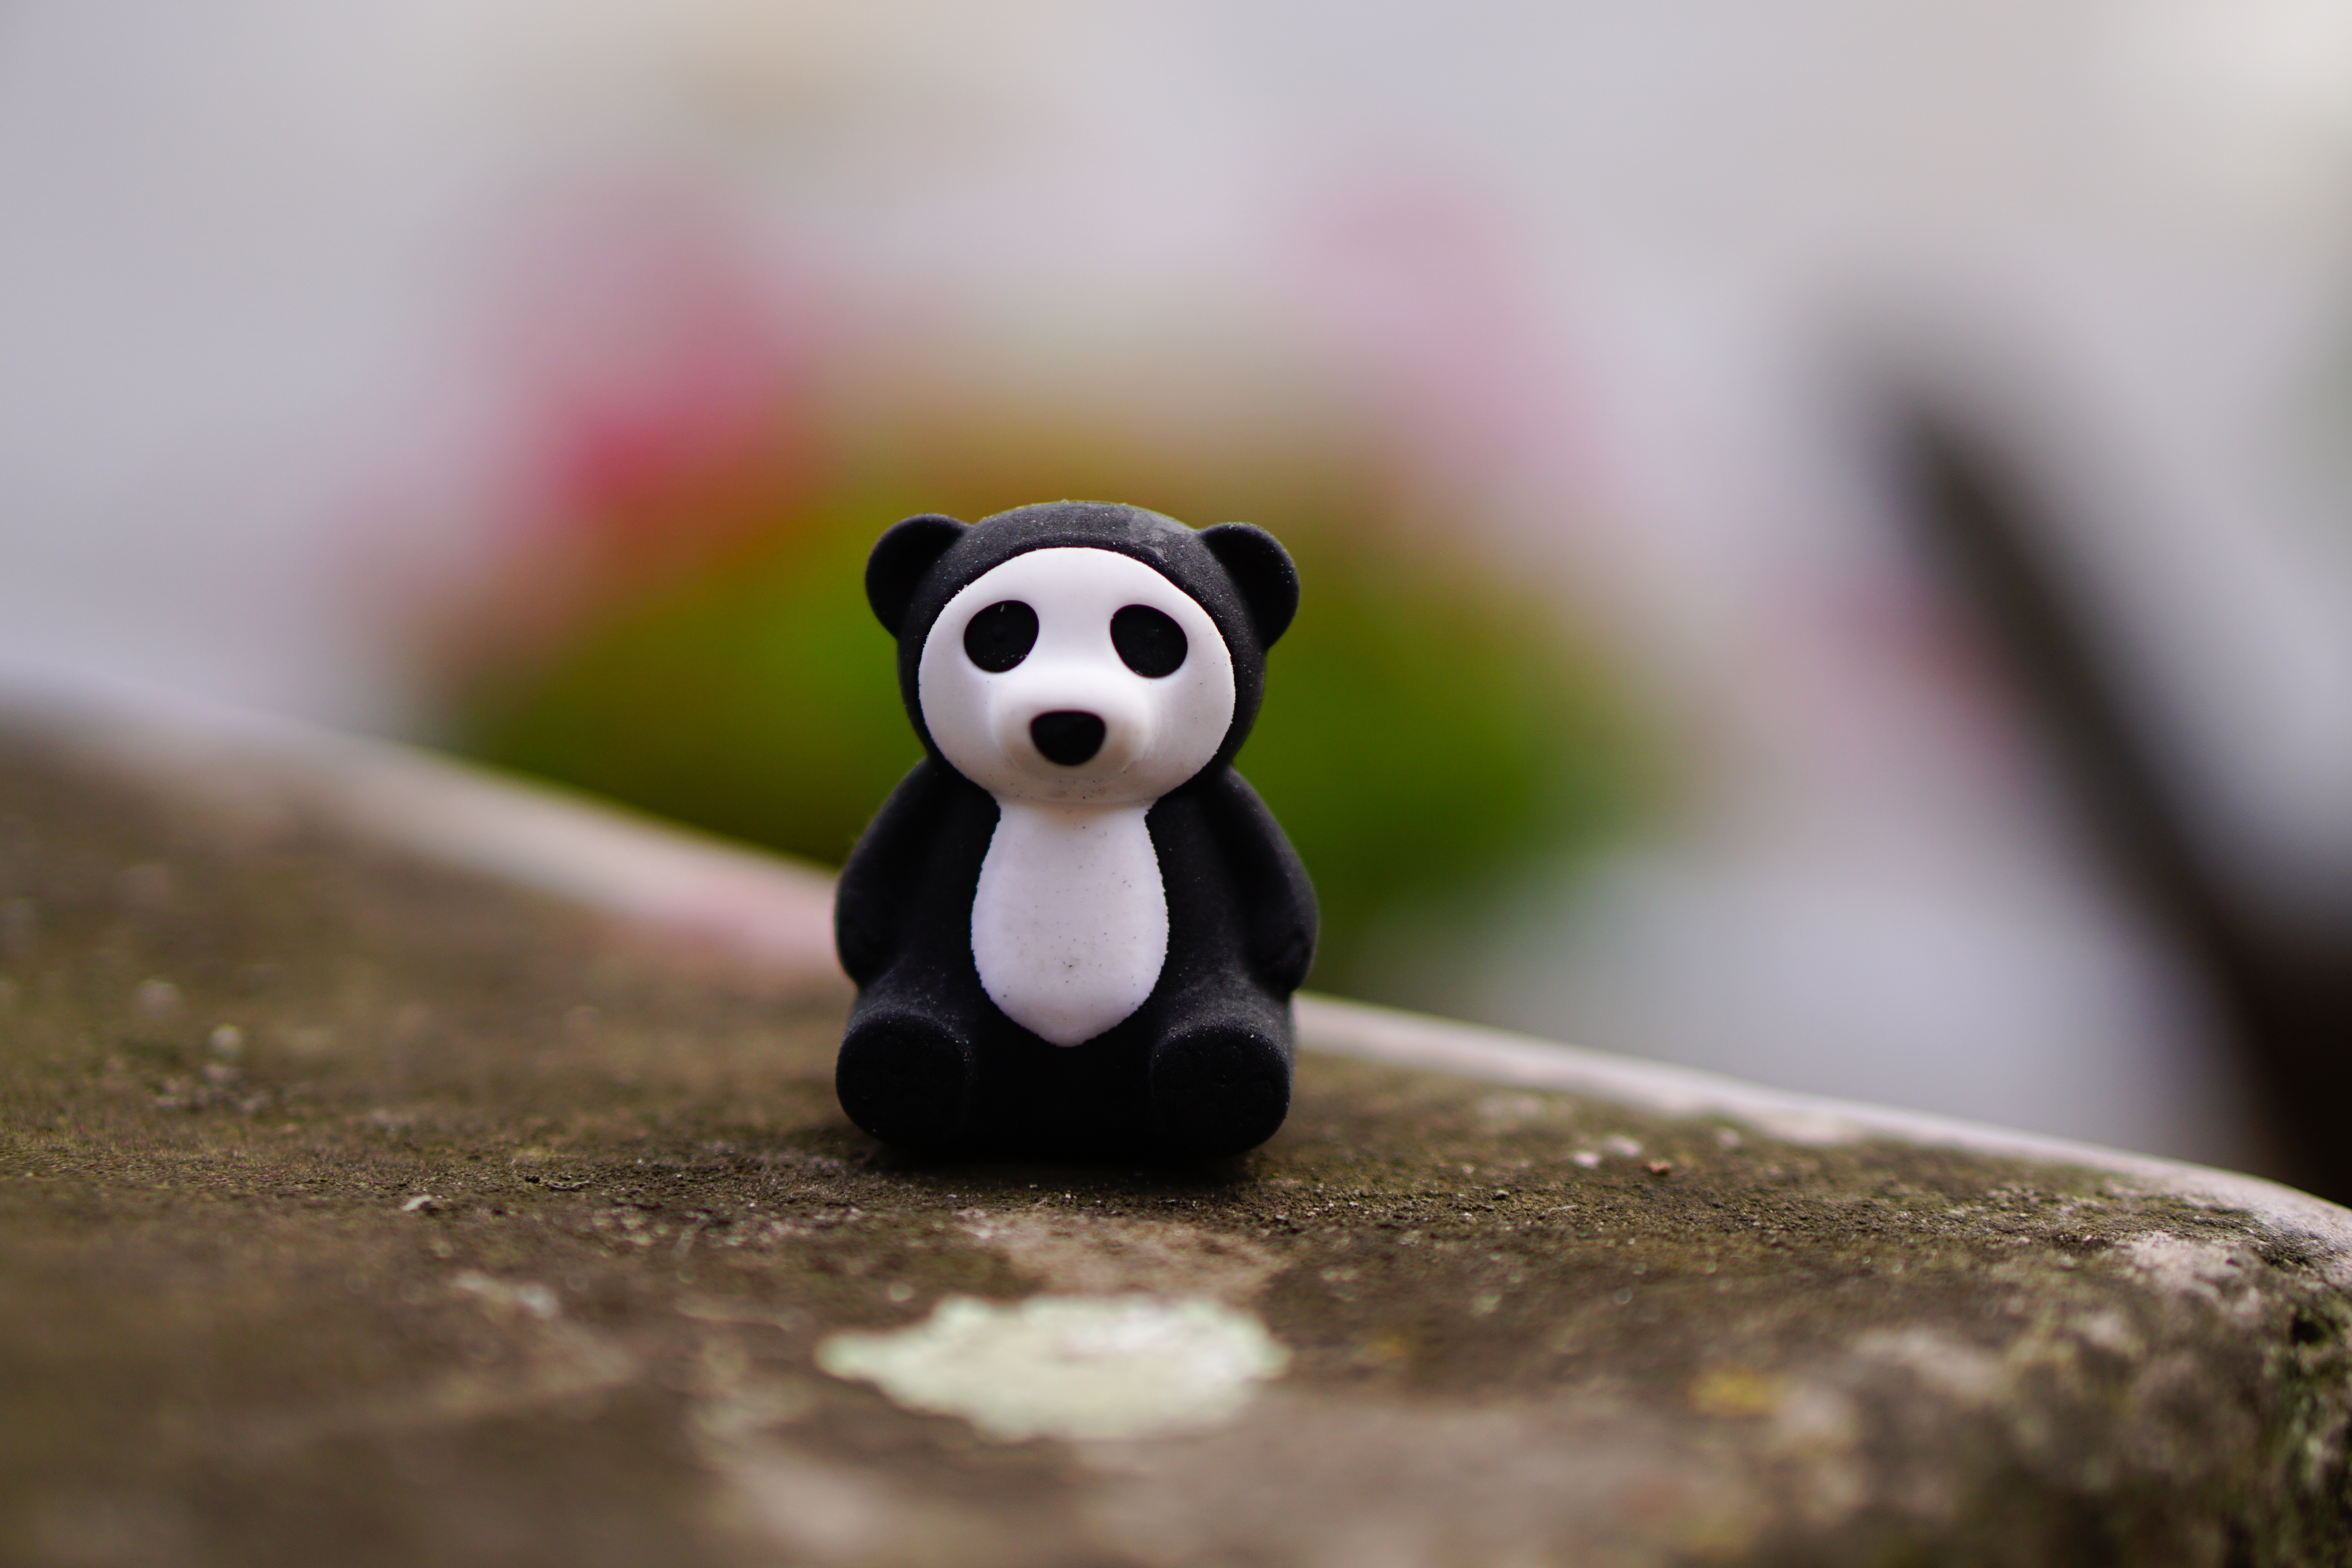 panda, miscellanea, miscellaneous, toy, statuette wallpaper for mobile